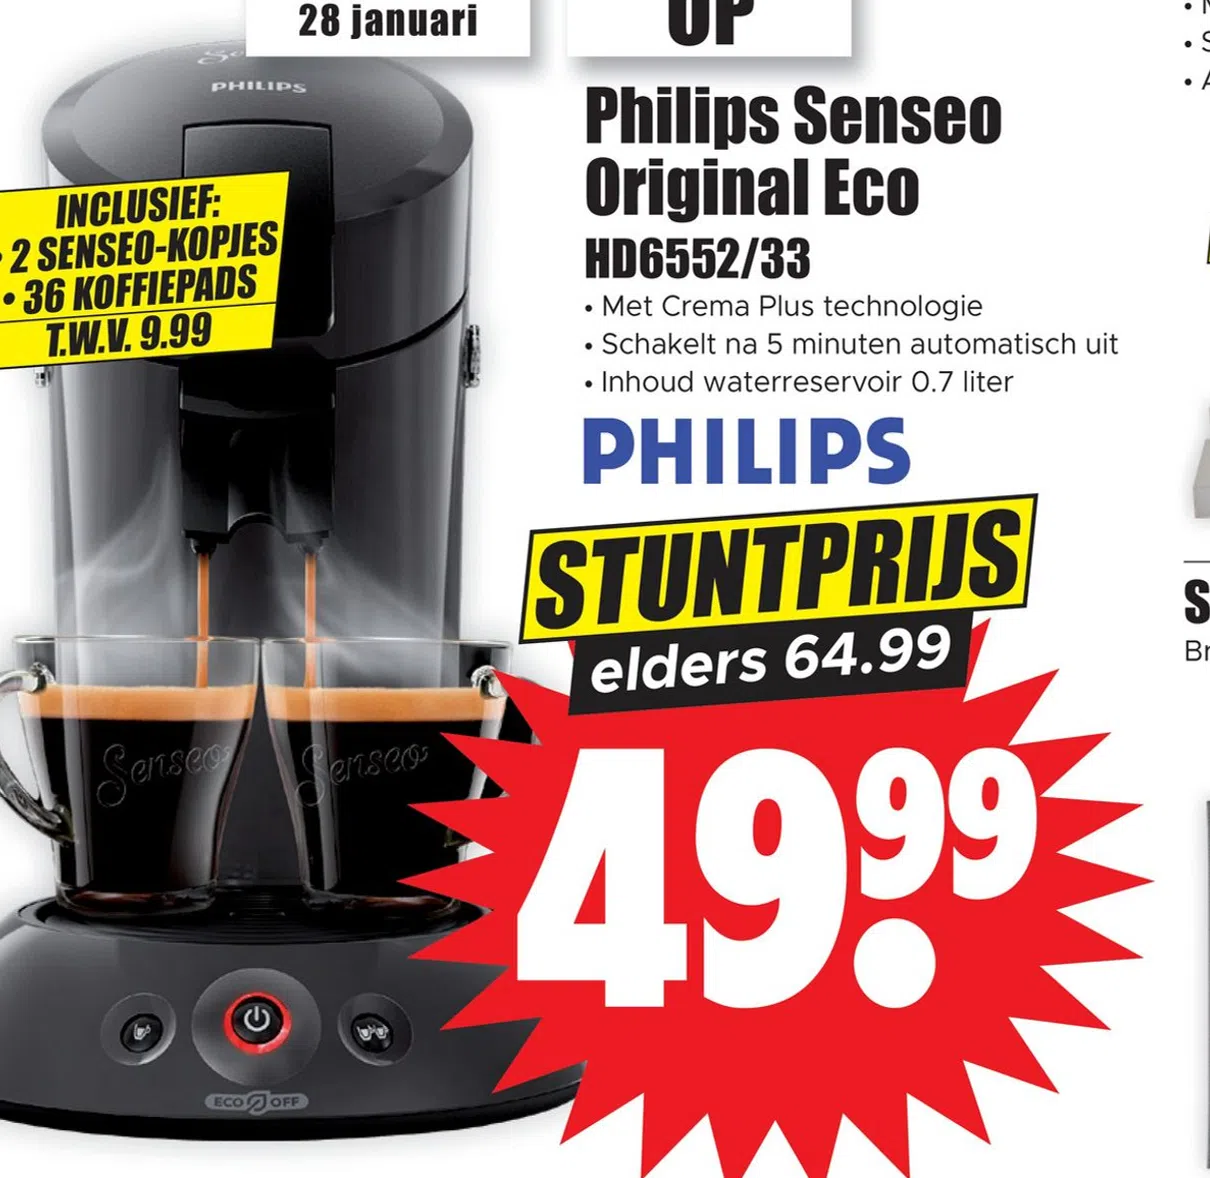 Supermarkt aanbieding in Zeebuurt-west: Philips Senseo Original Eco HD6552/33,